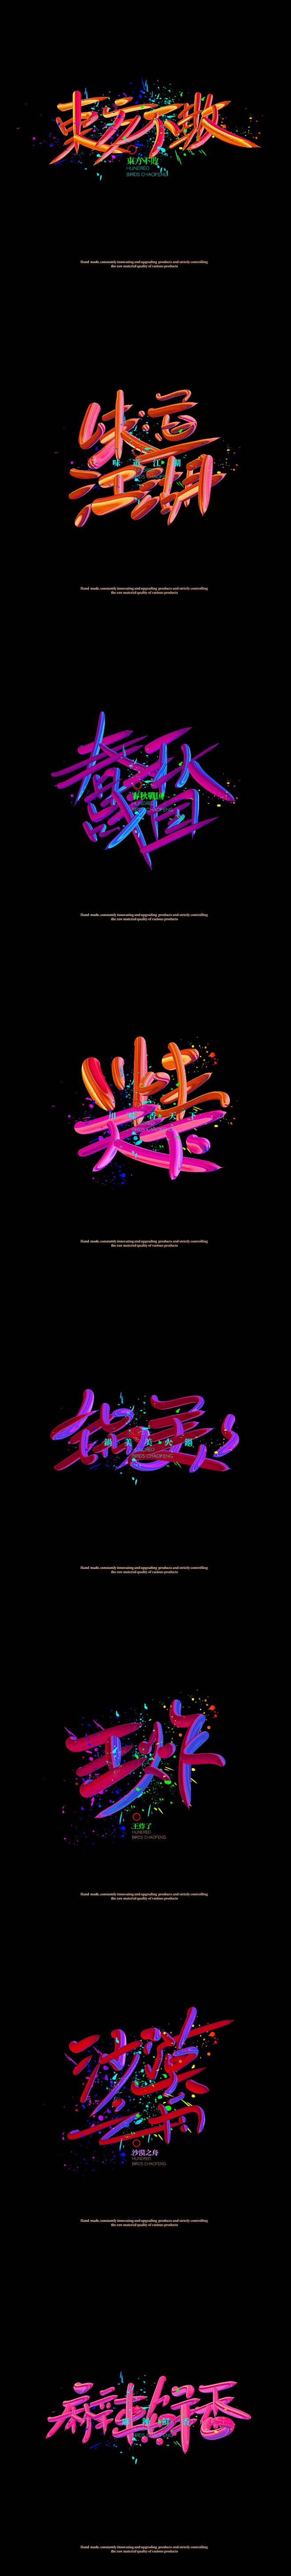 沙漠之舟一组商业字体设计欣赏-字体传奇网...